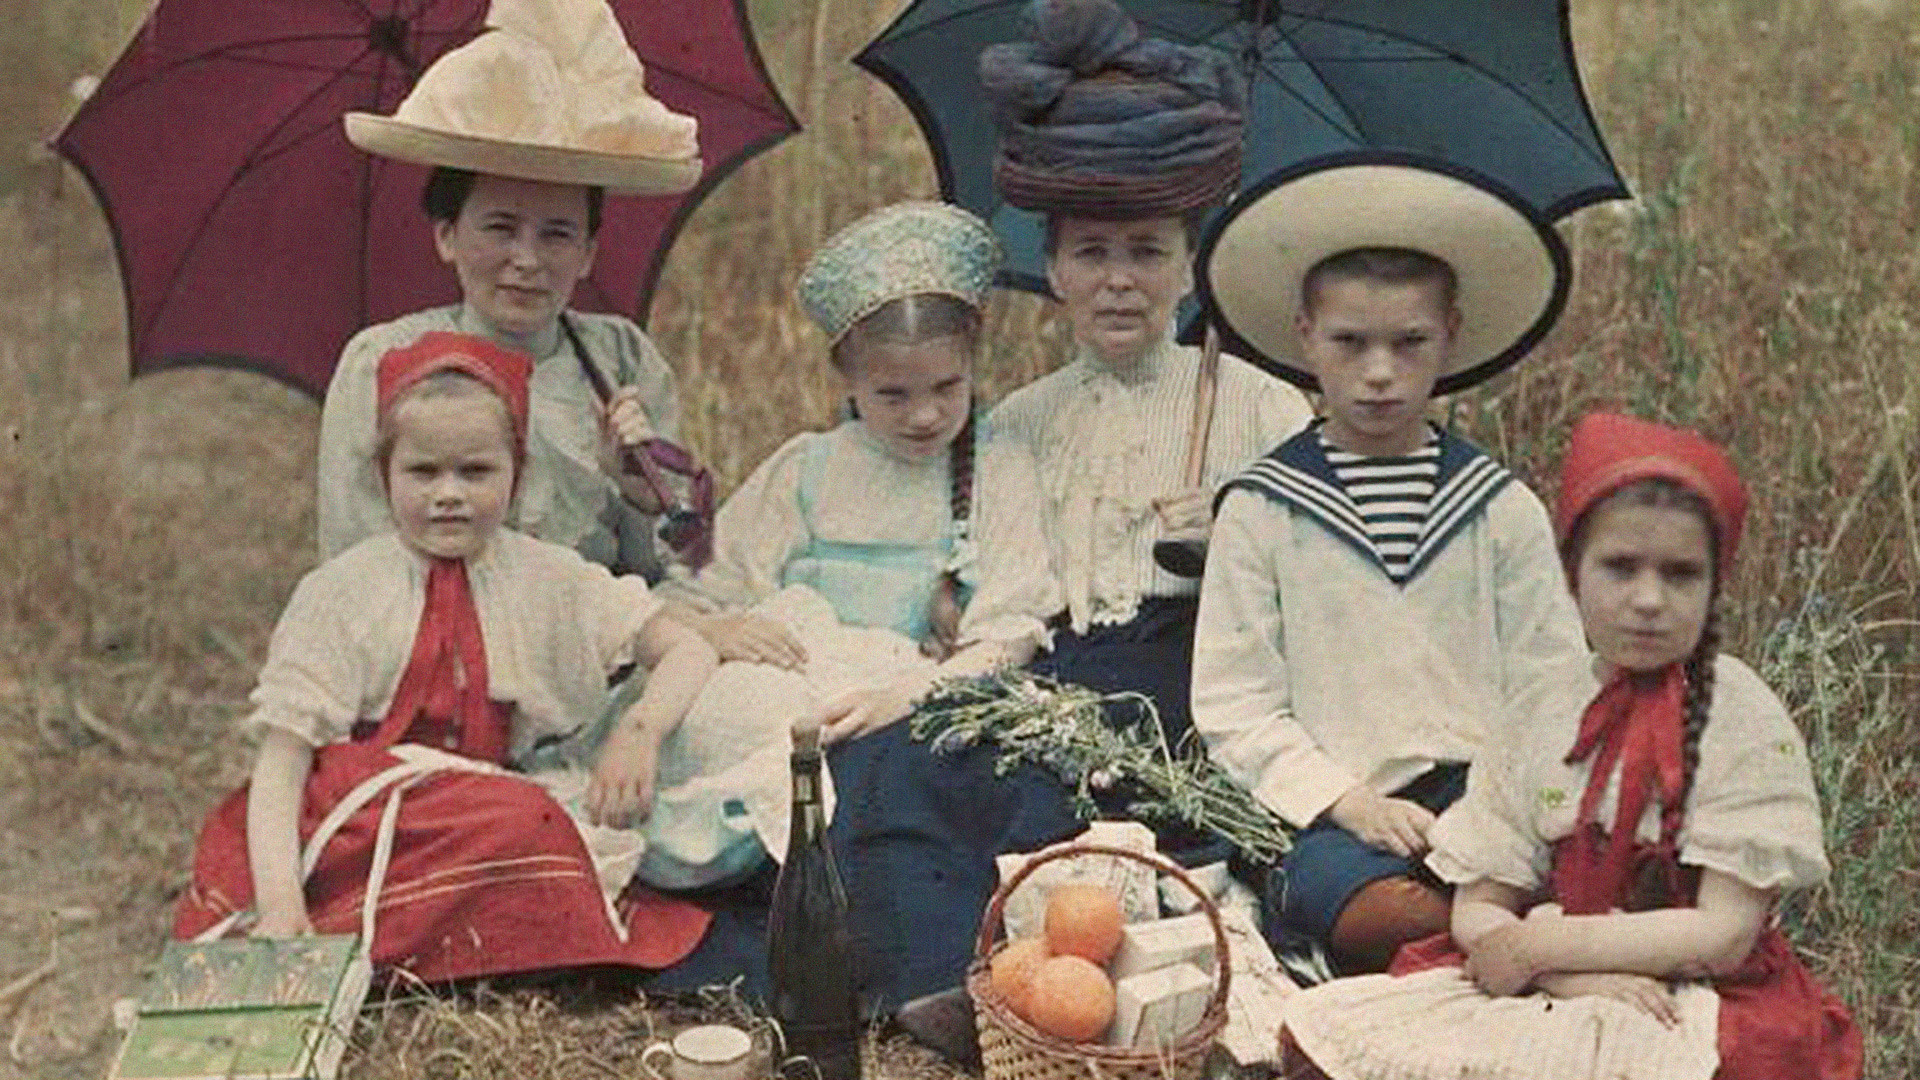 Kids in Yalta. 1910.